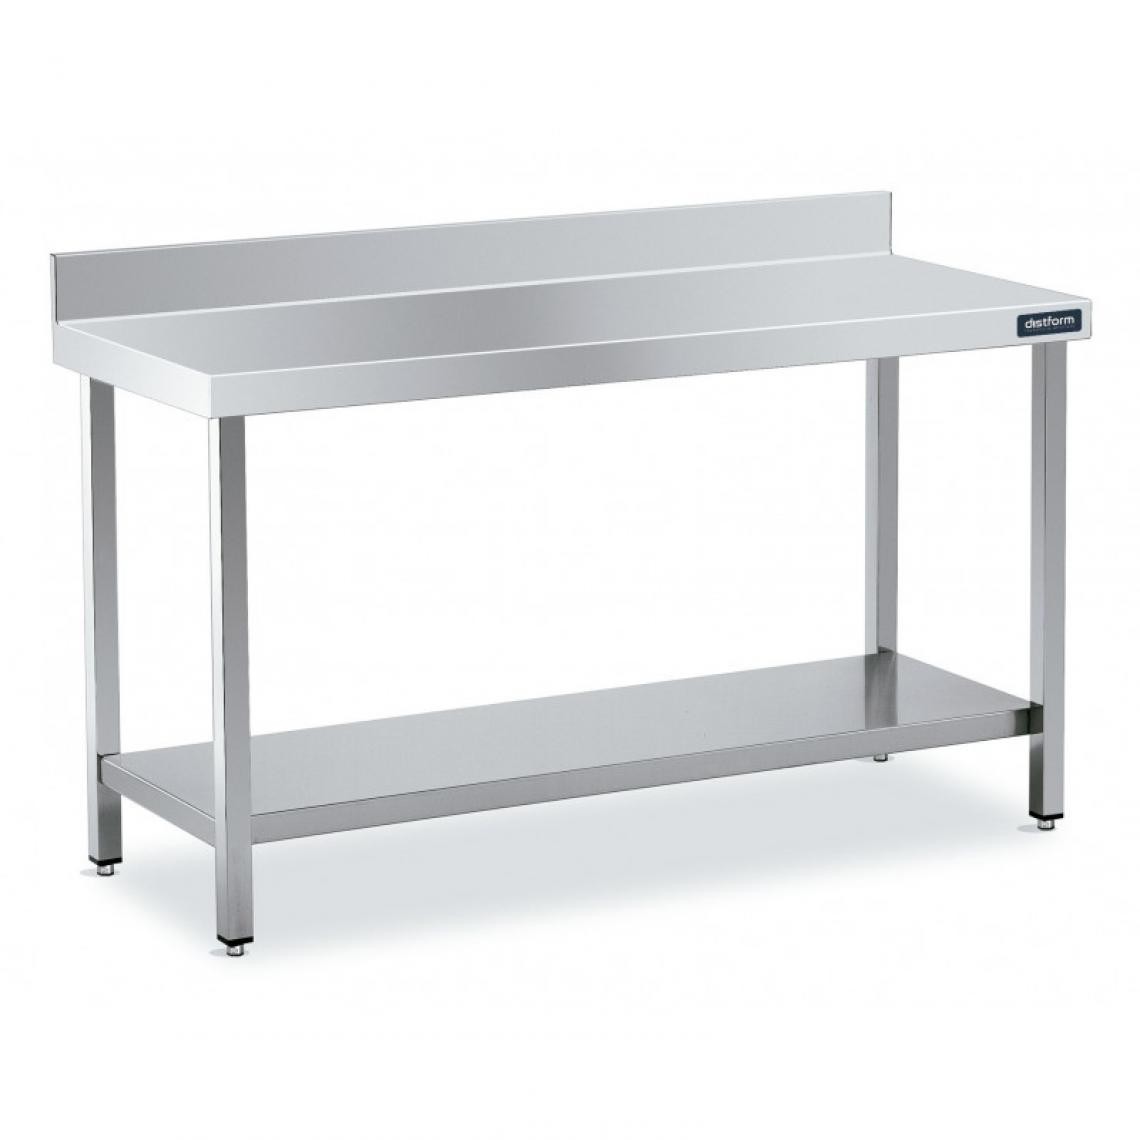 DISTFORM - Table Inox de Travail Adossée avec Étagère - Gamme 500 - Distform - Acier inoxydable1600x500 - Tables à manger